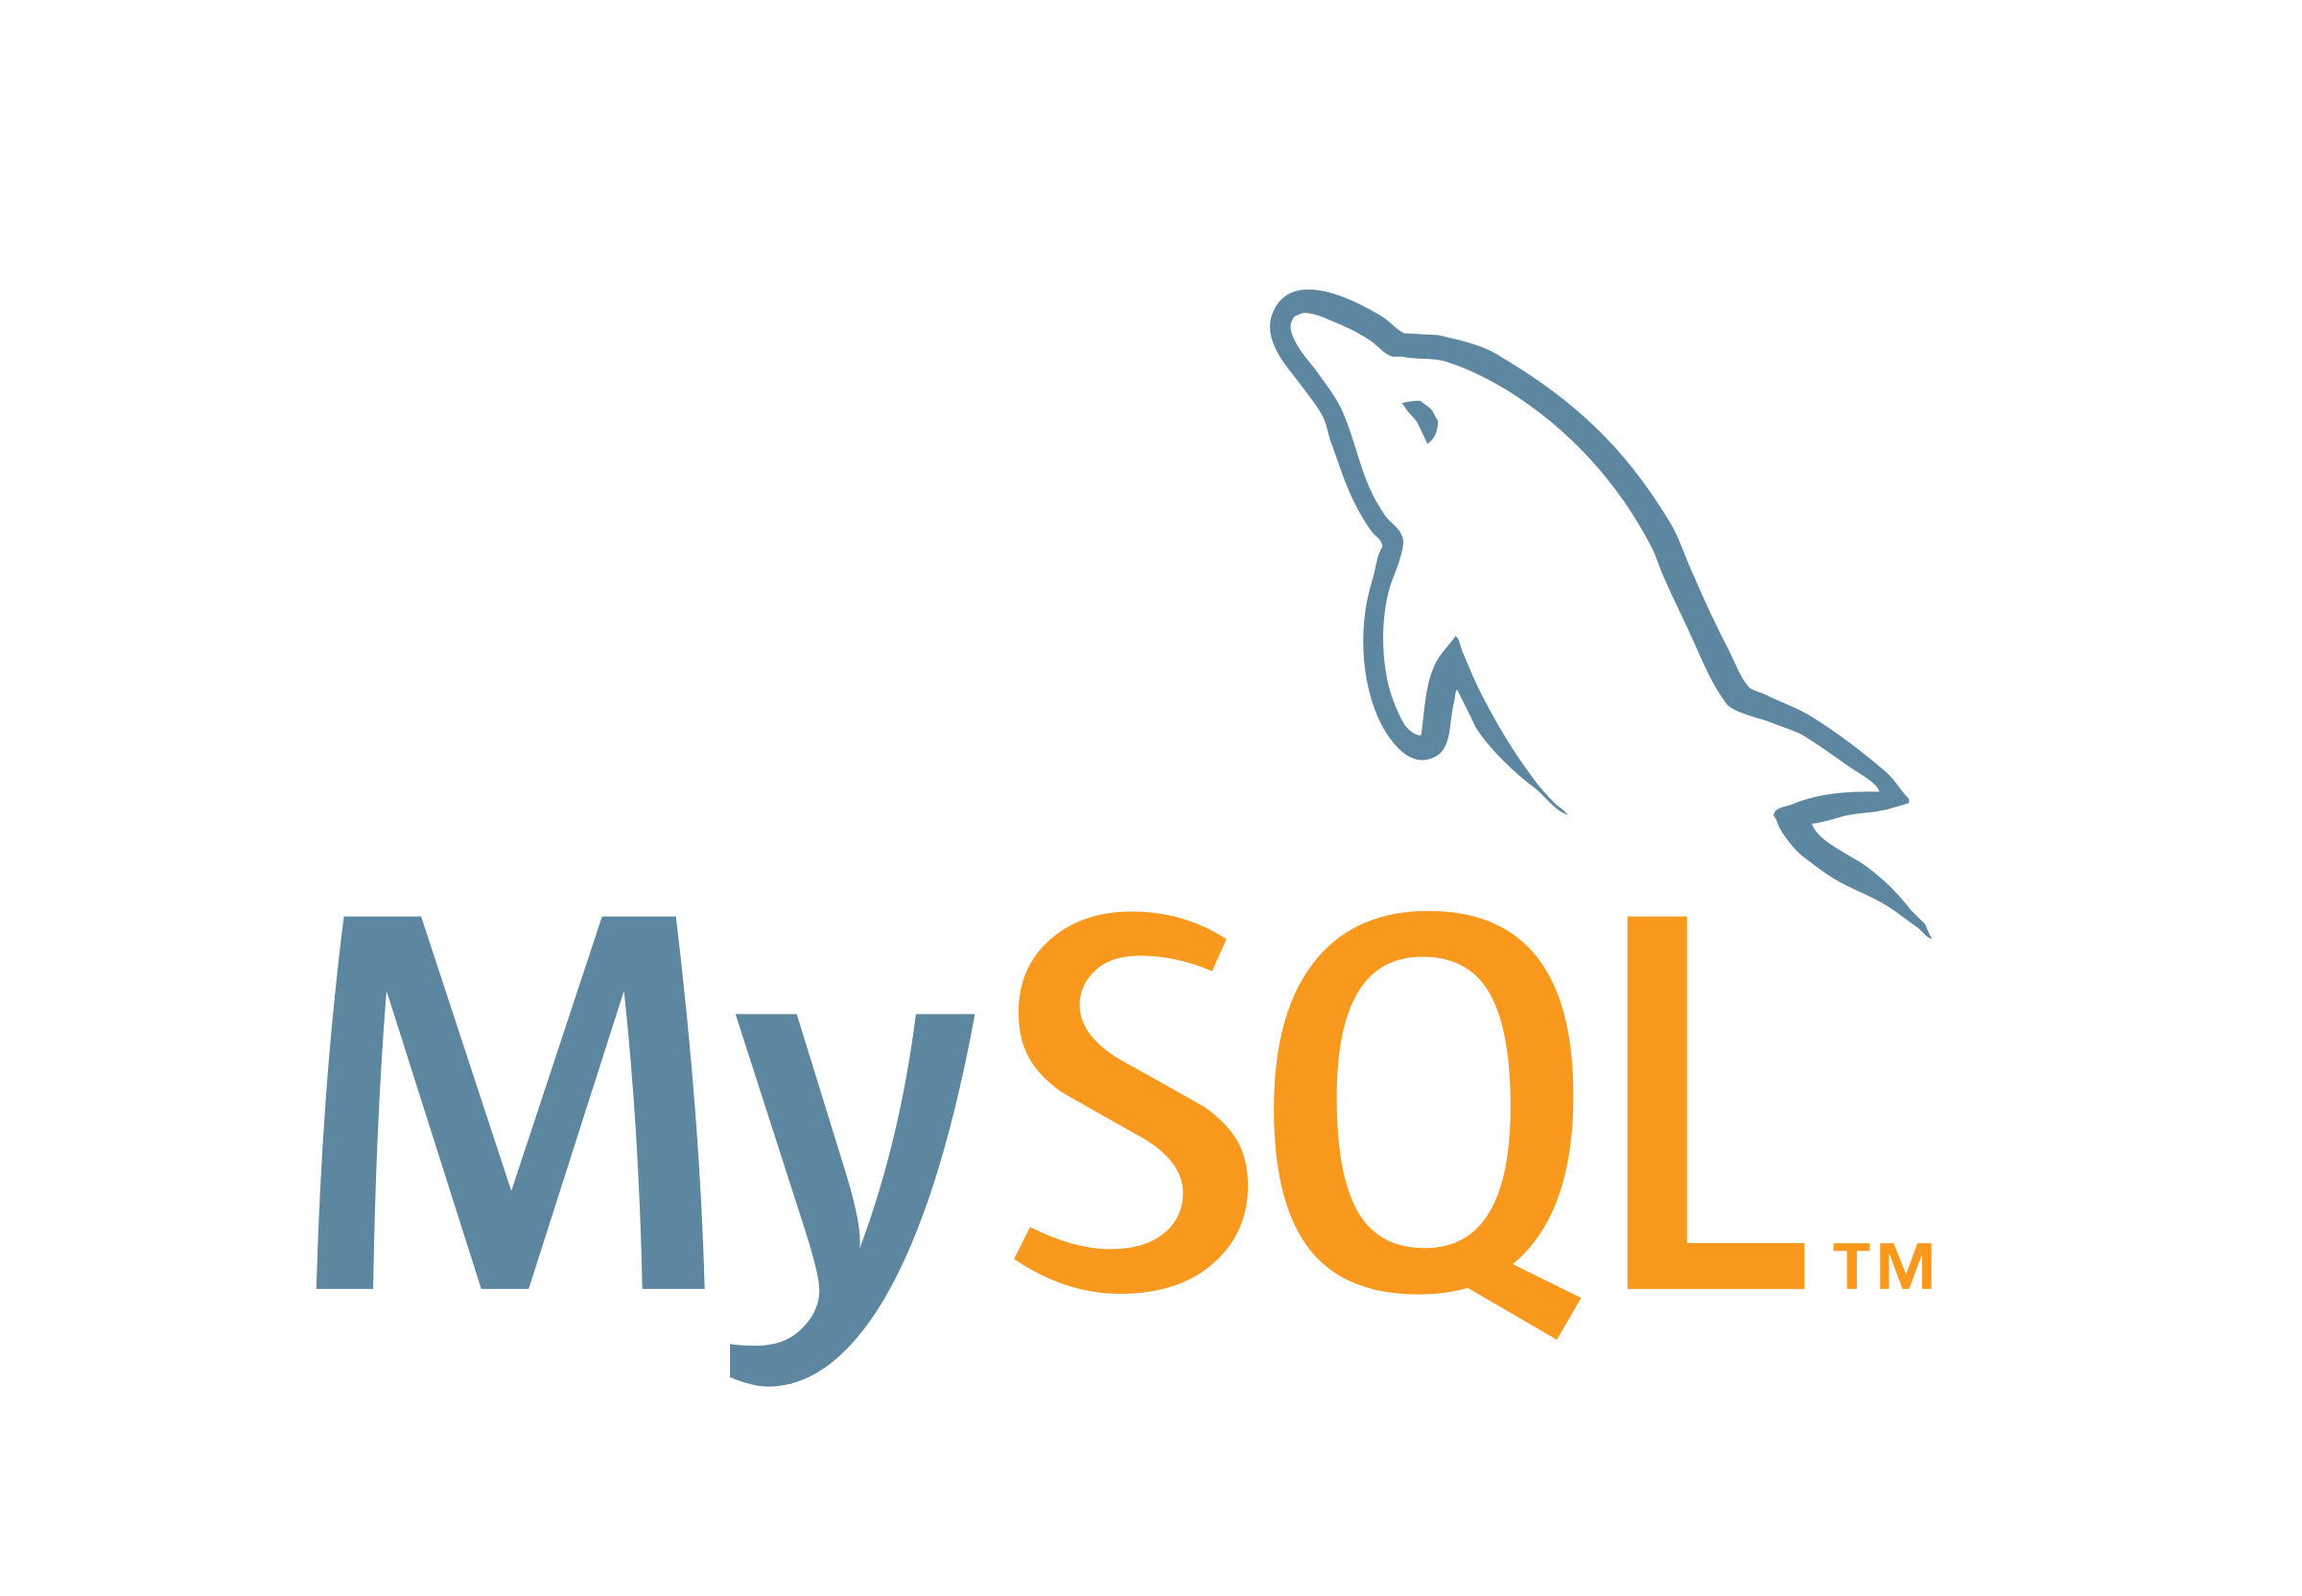 SQL整形ツールを作成した